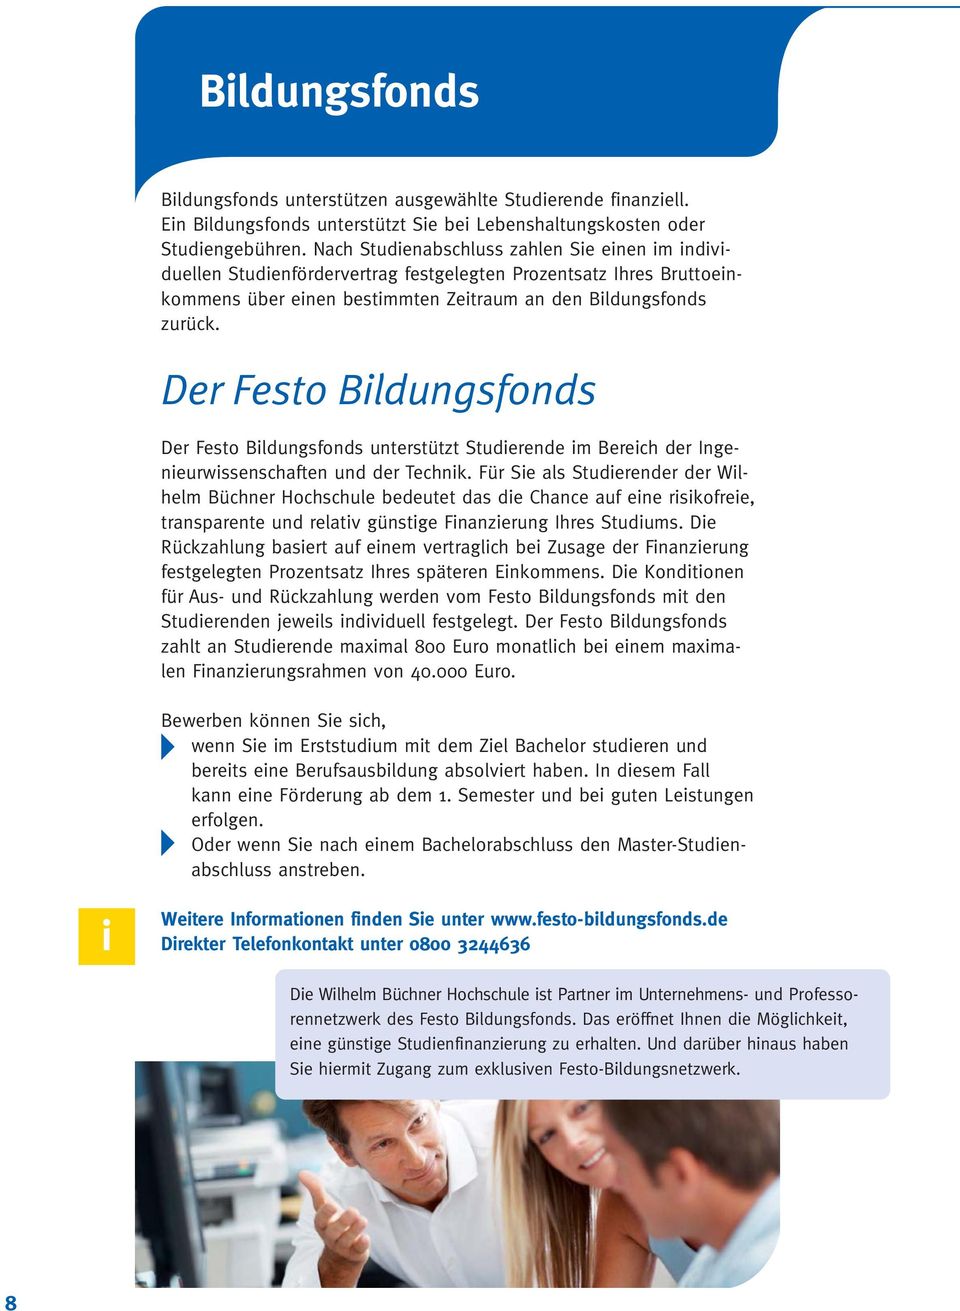 Der Festo Bldungsfonds Der Festo Bldungsfonds unterstützt Studerende m Berech der Ingeneurwssenschaften und der Technk.